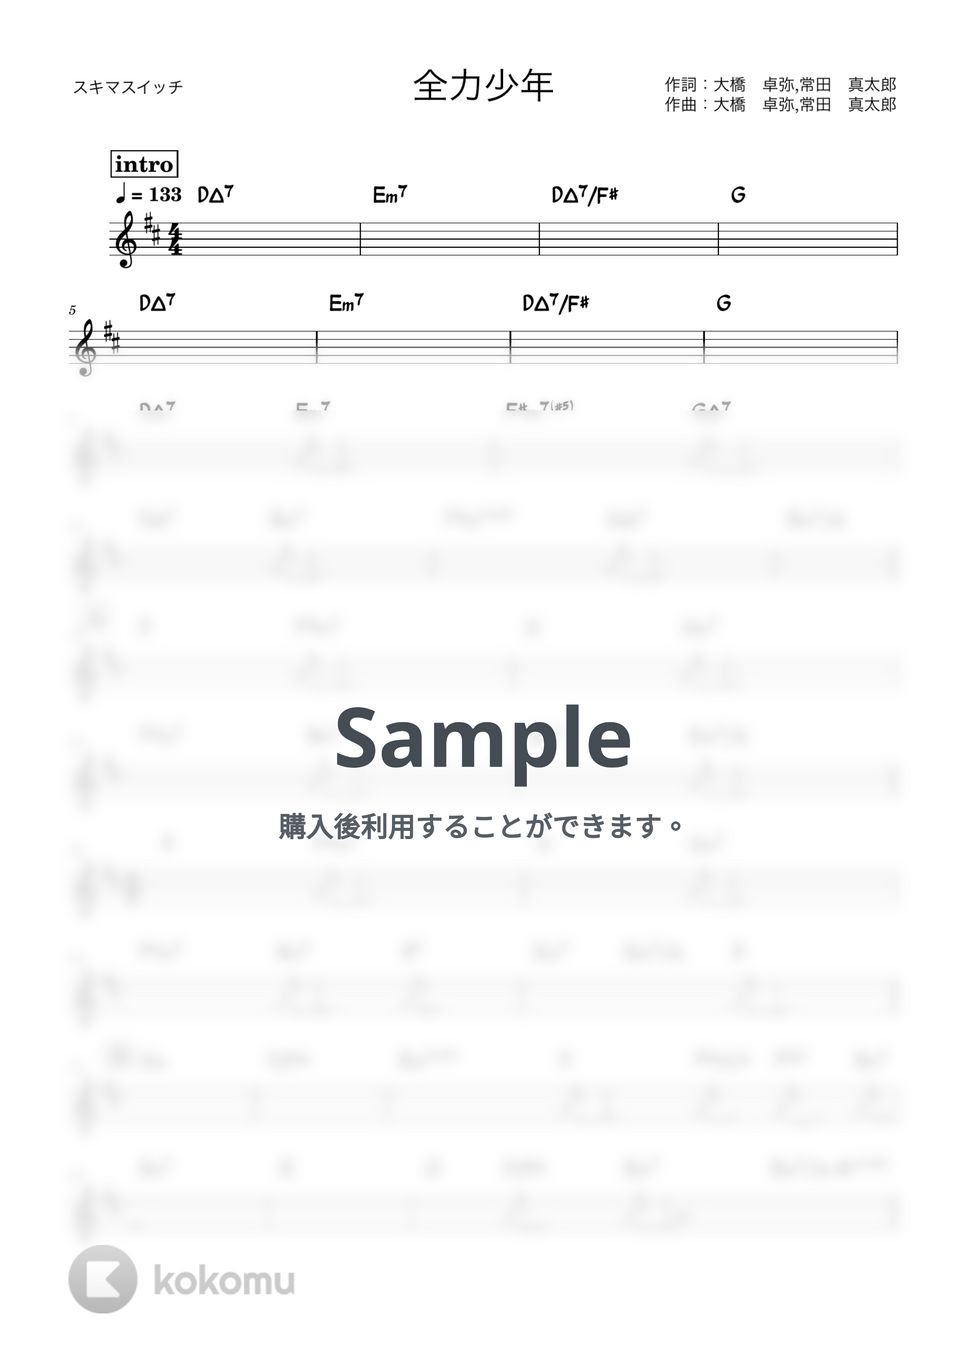 スキマスイッチ - 全力少年 (バンド用コード譜) by 箱譜屋